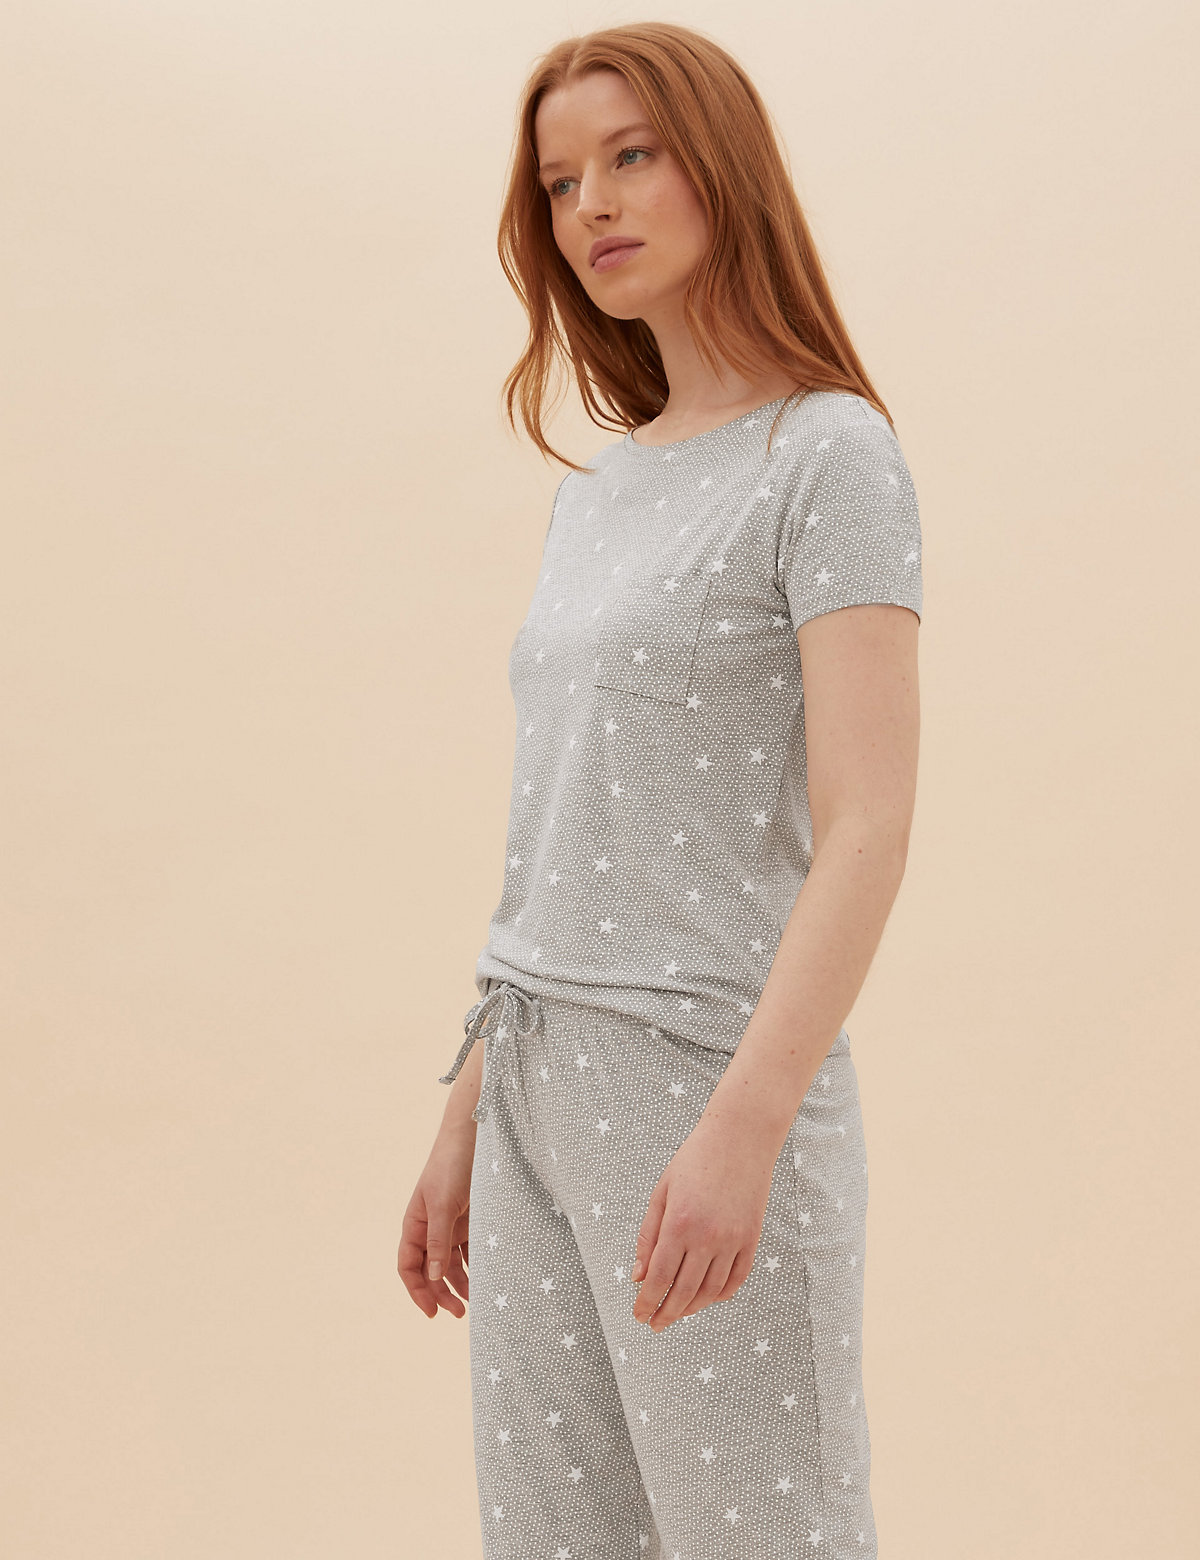 Star Print Pyjama Set